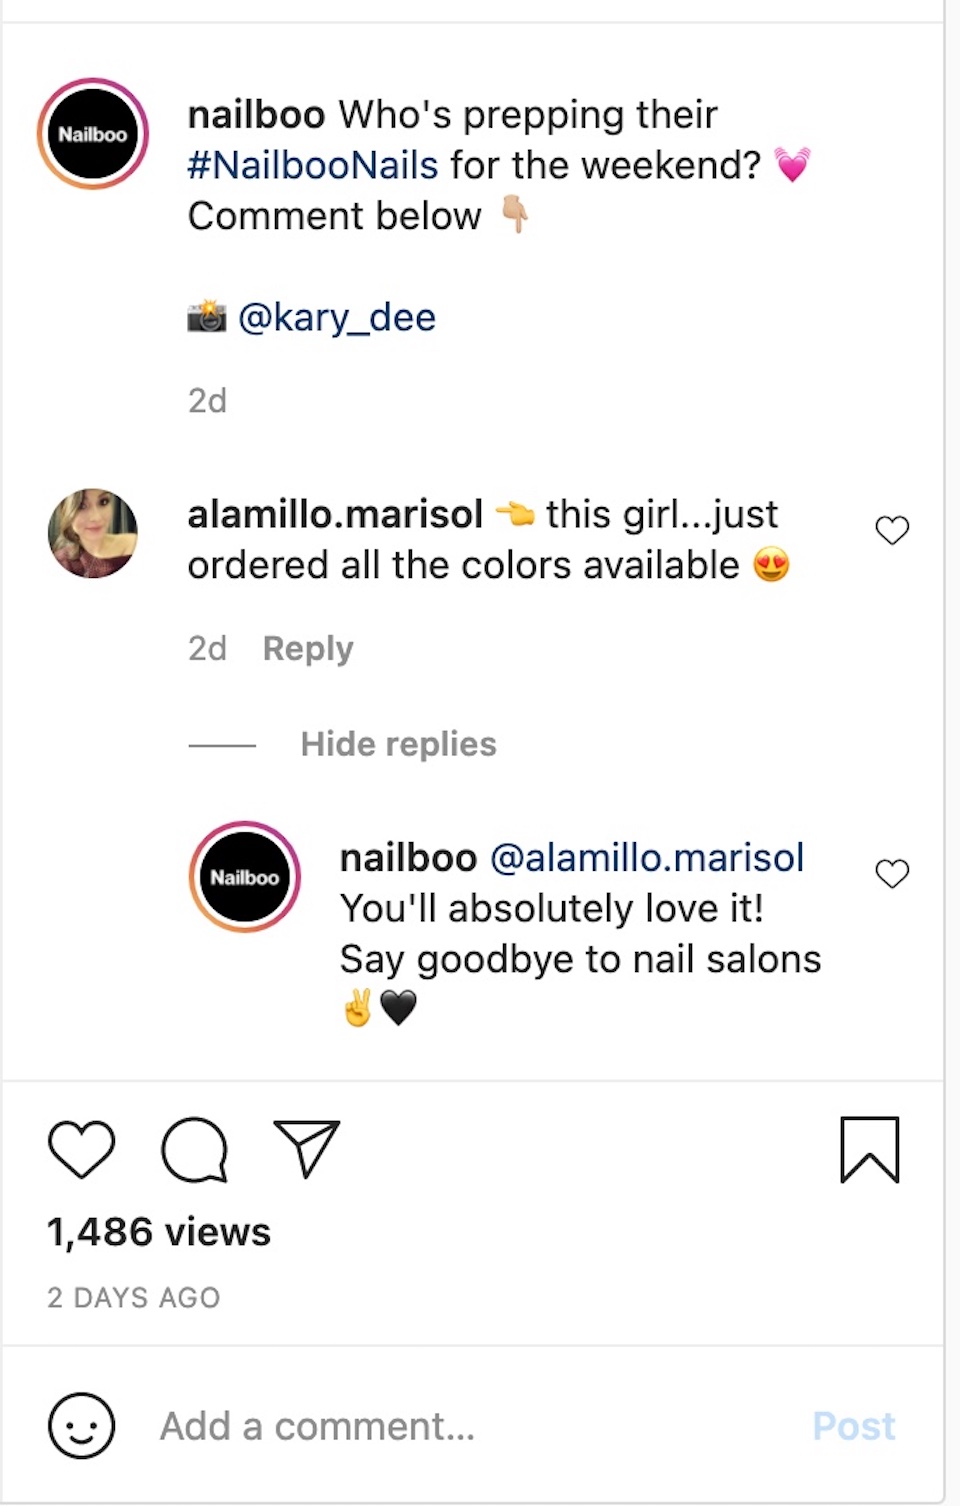 ネイル製品会社 Nailboo は、Instagram アカウントの投稿でコメント投稿者とやり取りしている様子が描かれています。